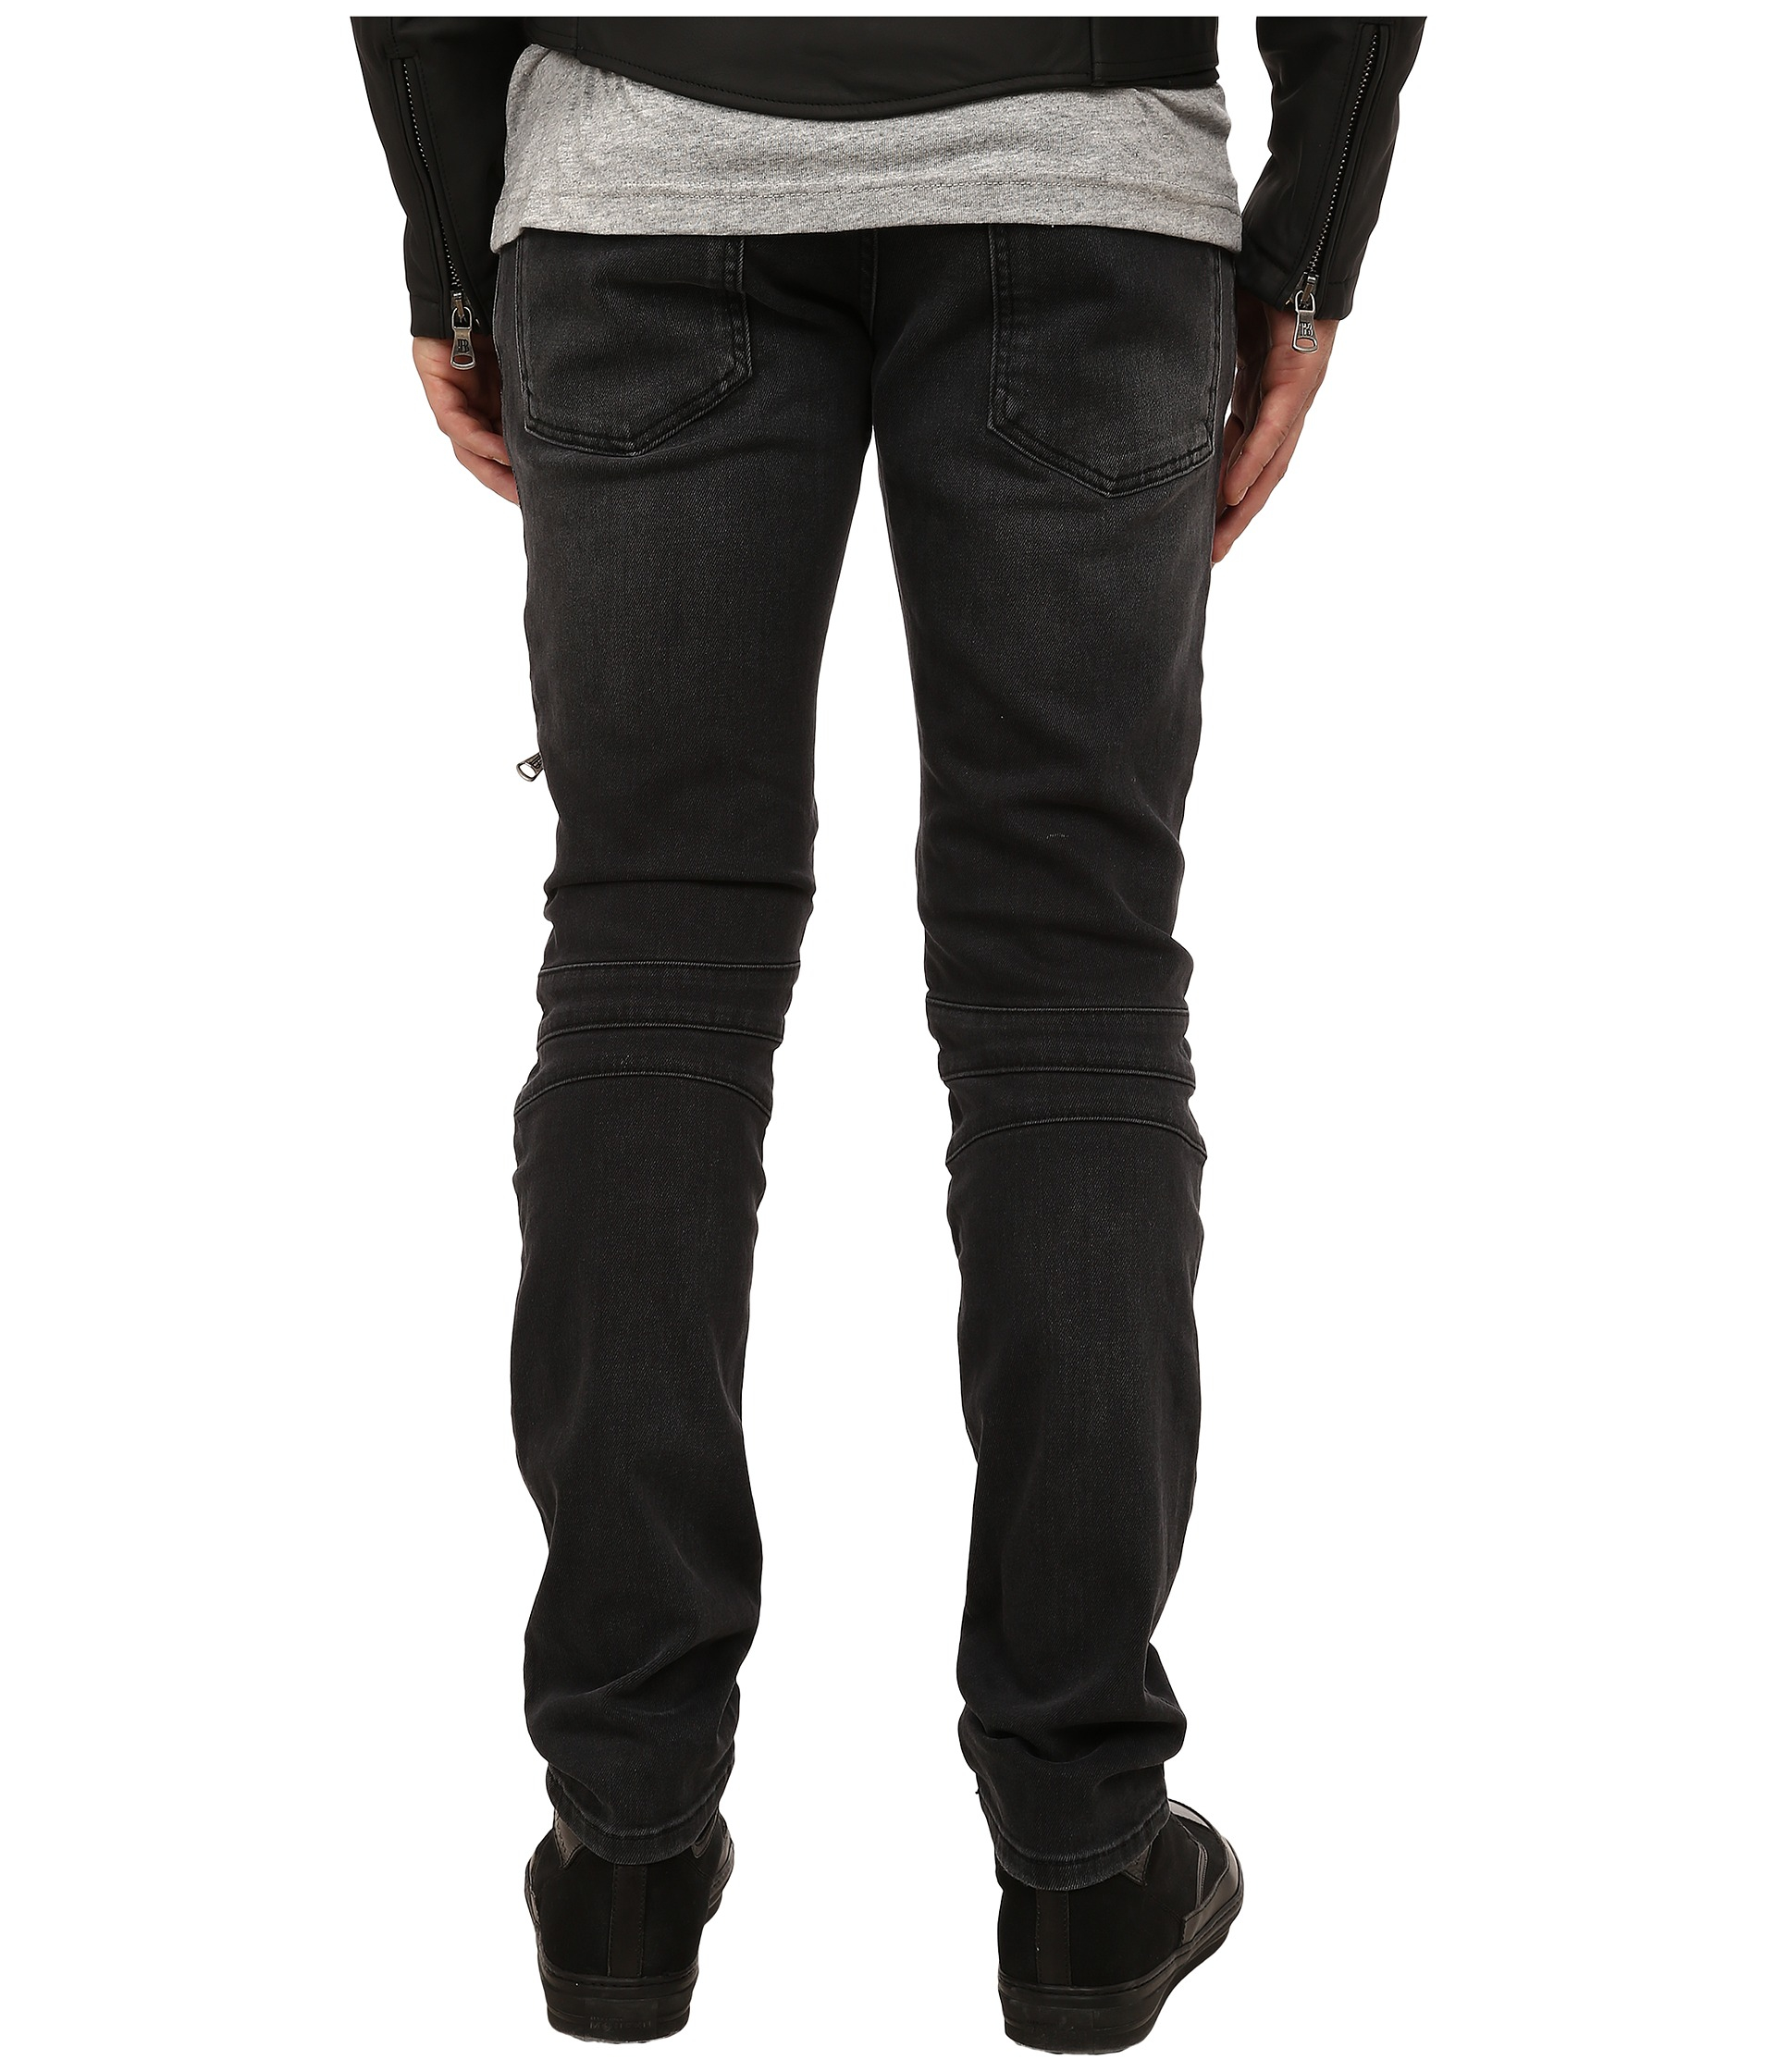 Balmain Zipper Jeans in Black for Men - Lyst